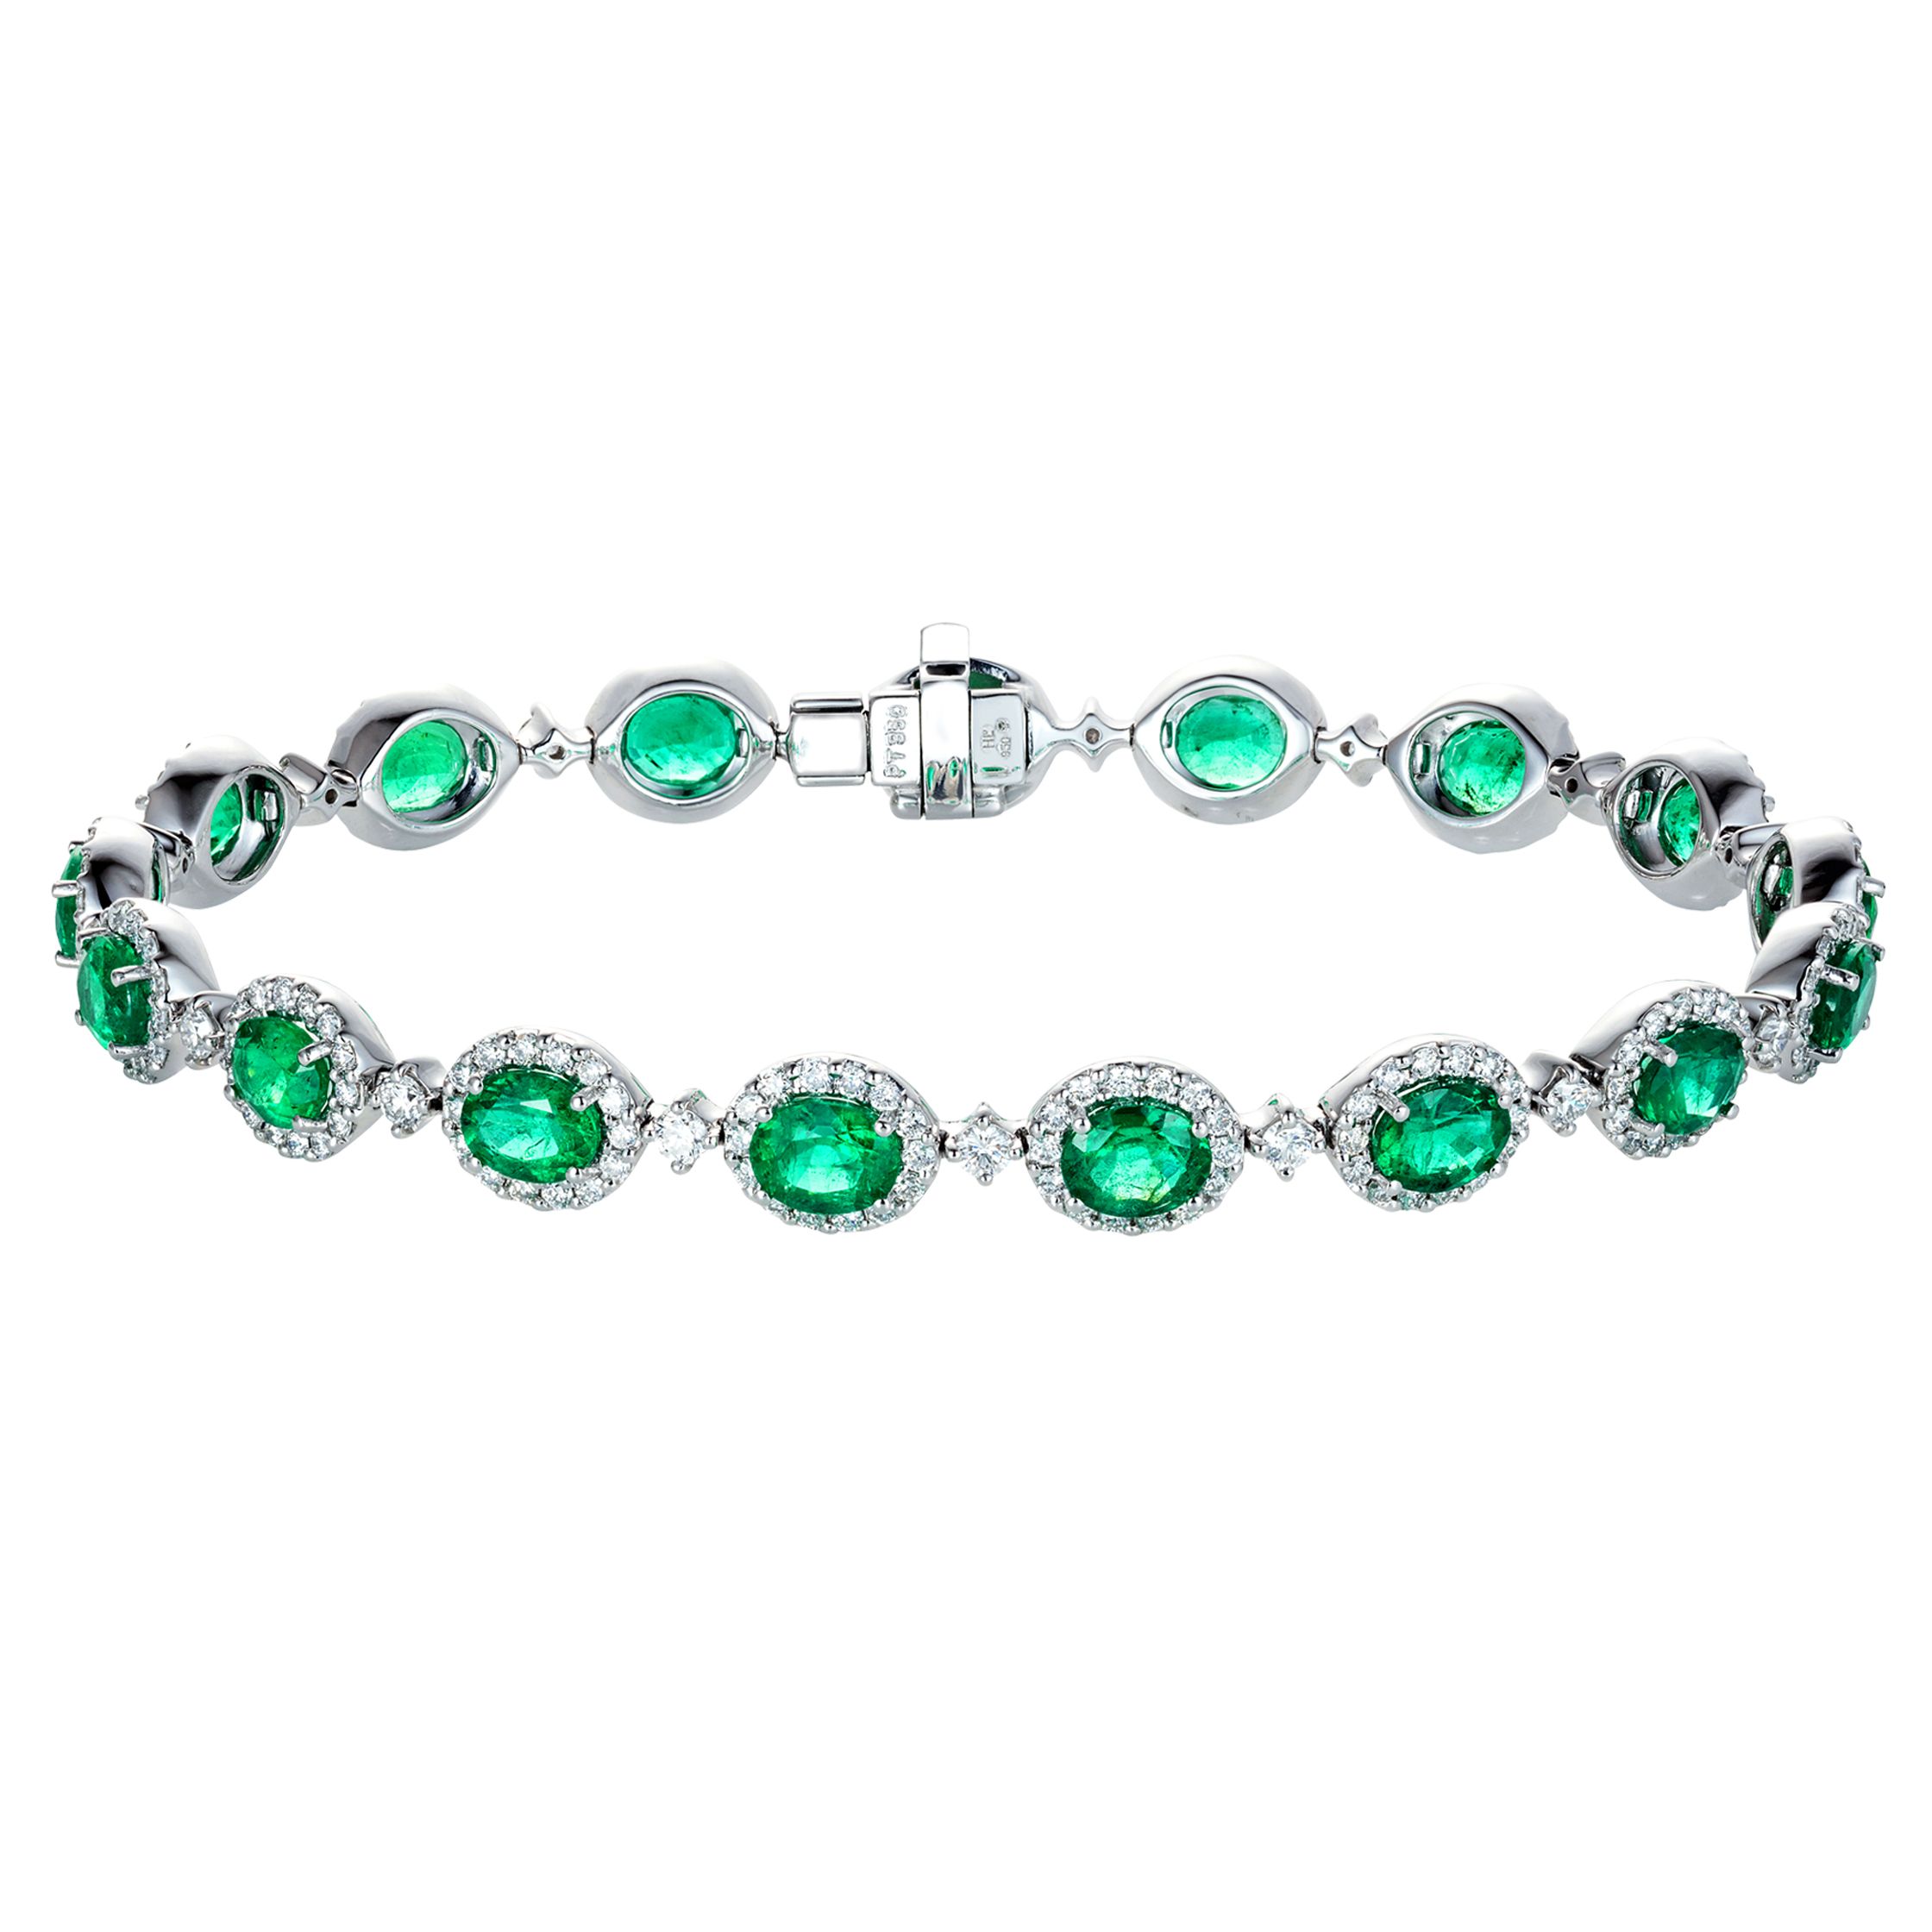 Queen Alexandrine's Emerald and Diamond Bracelet to Be Sold-hdcinema.vn